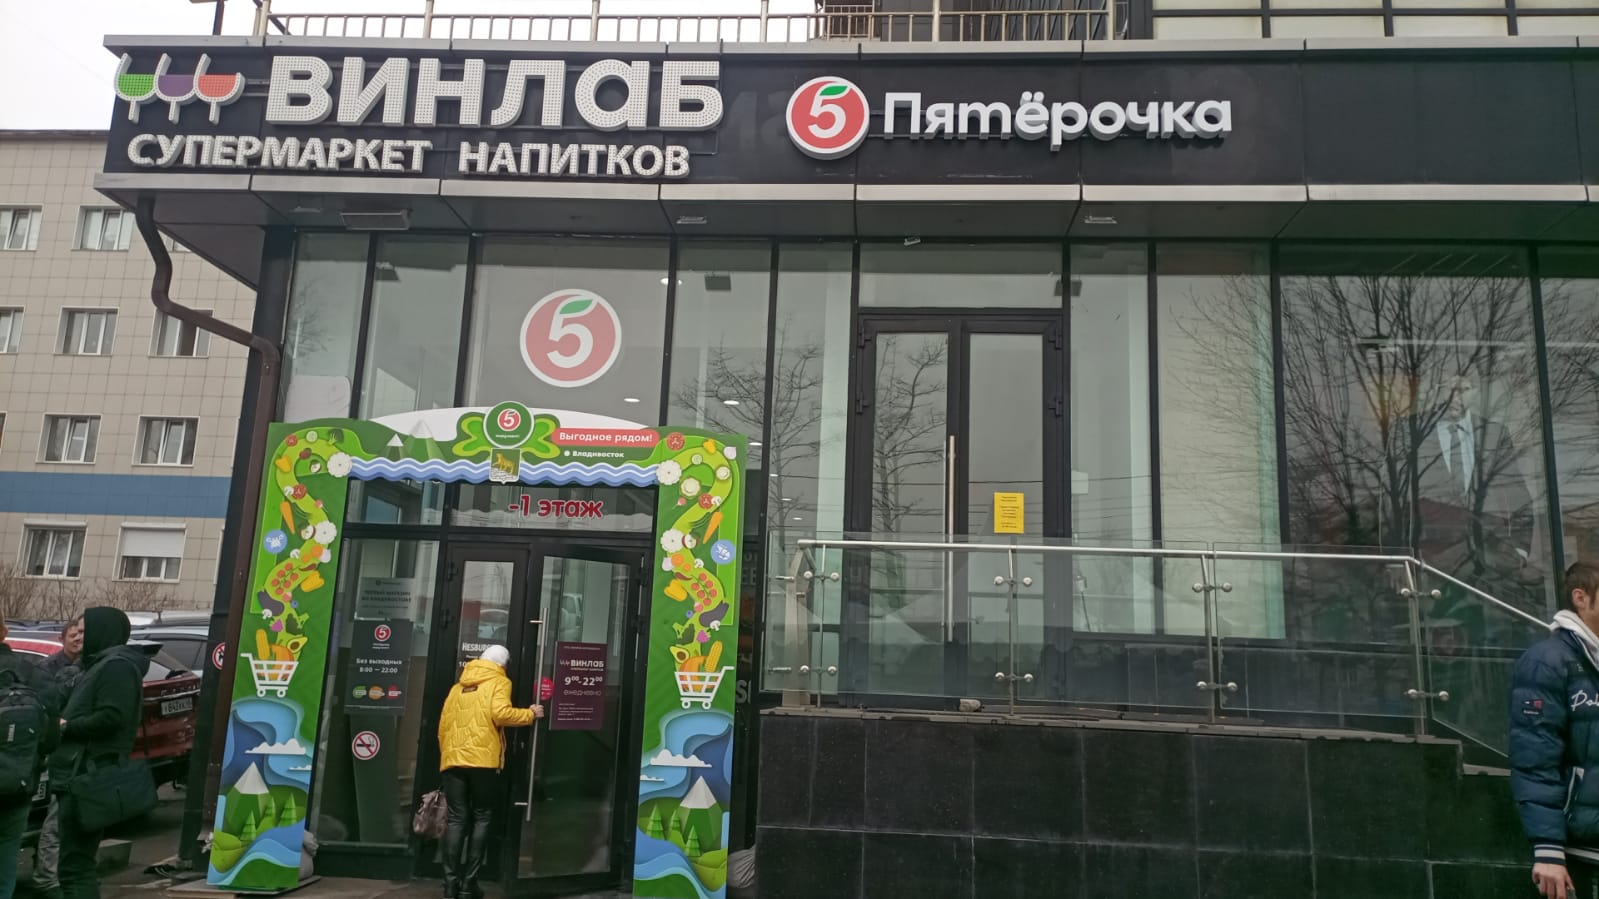 Во Владивостоке открылся первый магазин федеральной сети «Пятерочка»